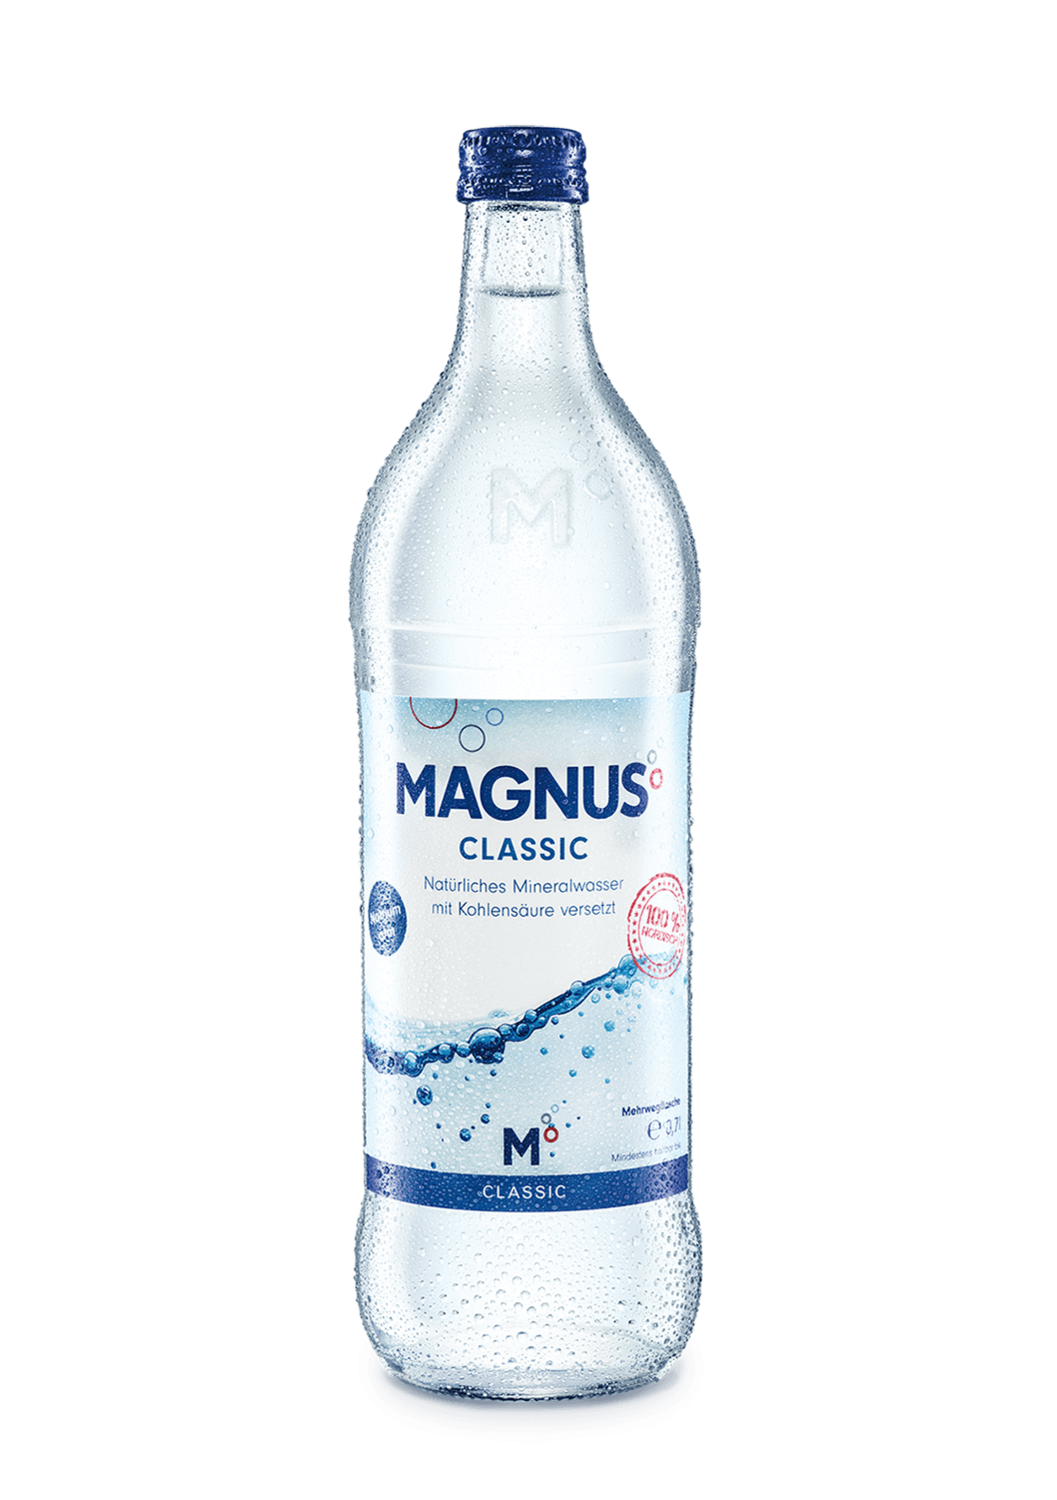 Magnus Classic
(12x 0,75l Glas FL 7,99 € inkl. MwSt. zzgl. Pfand)